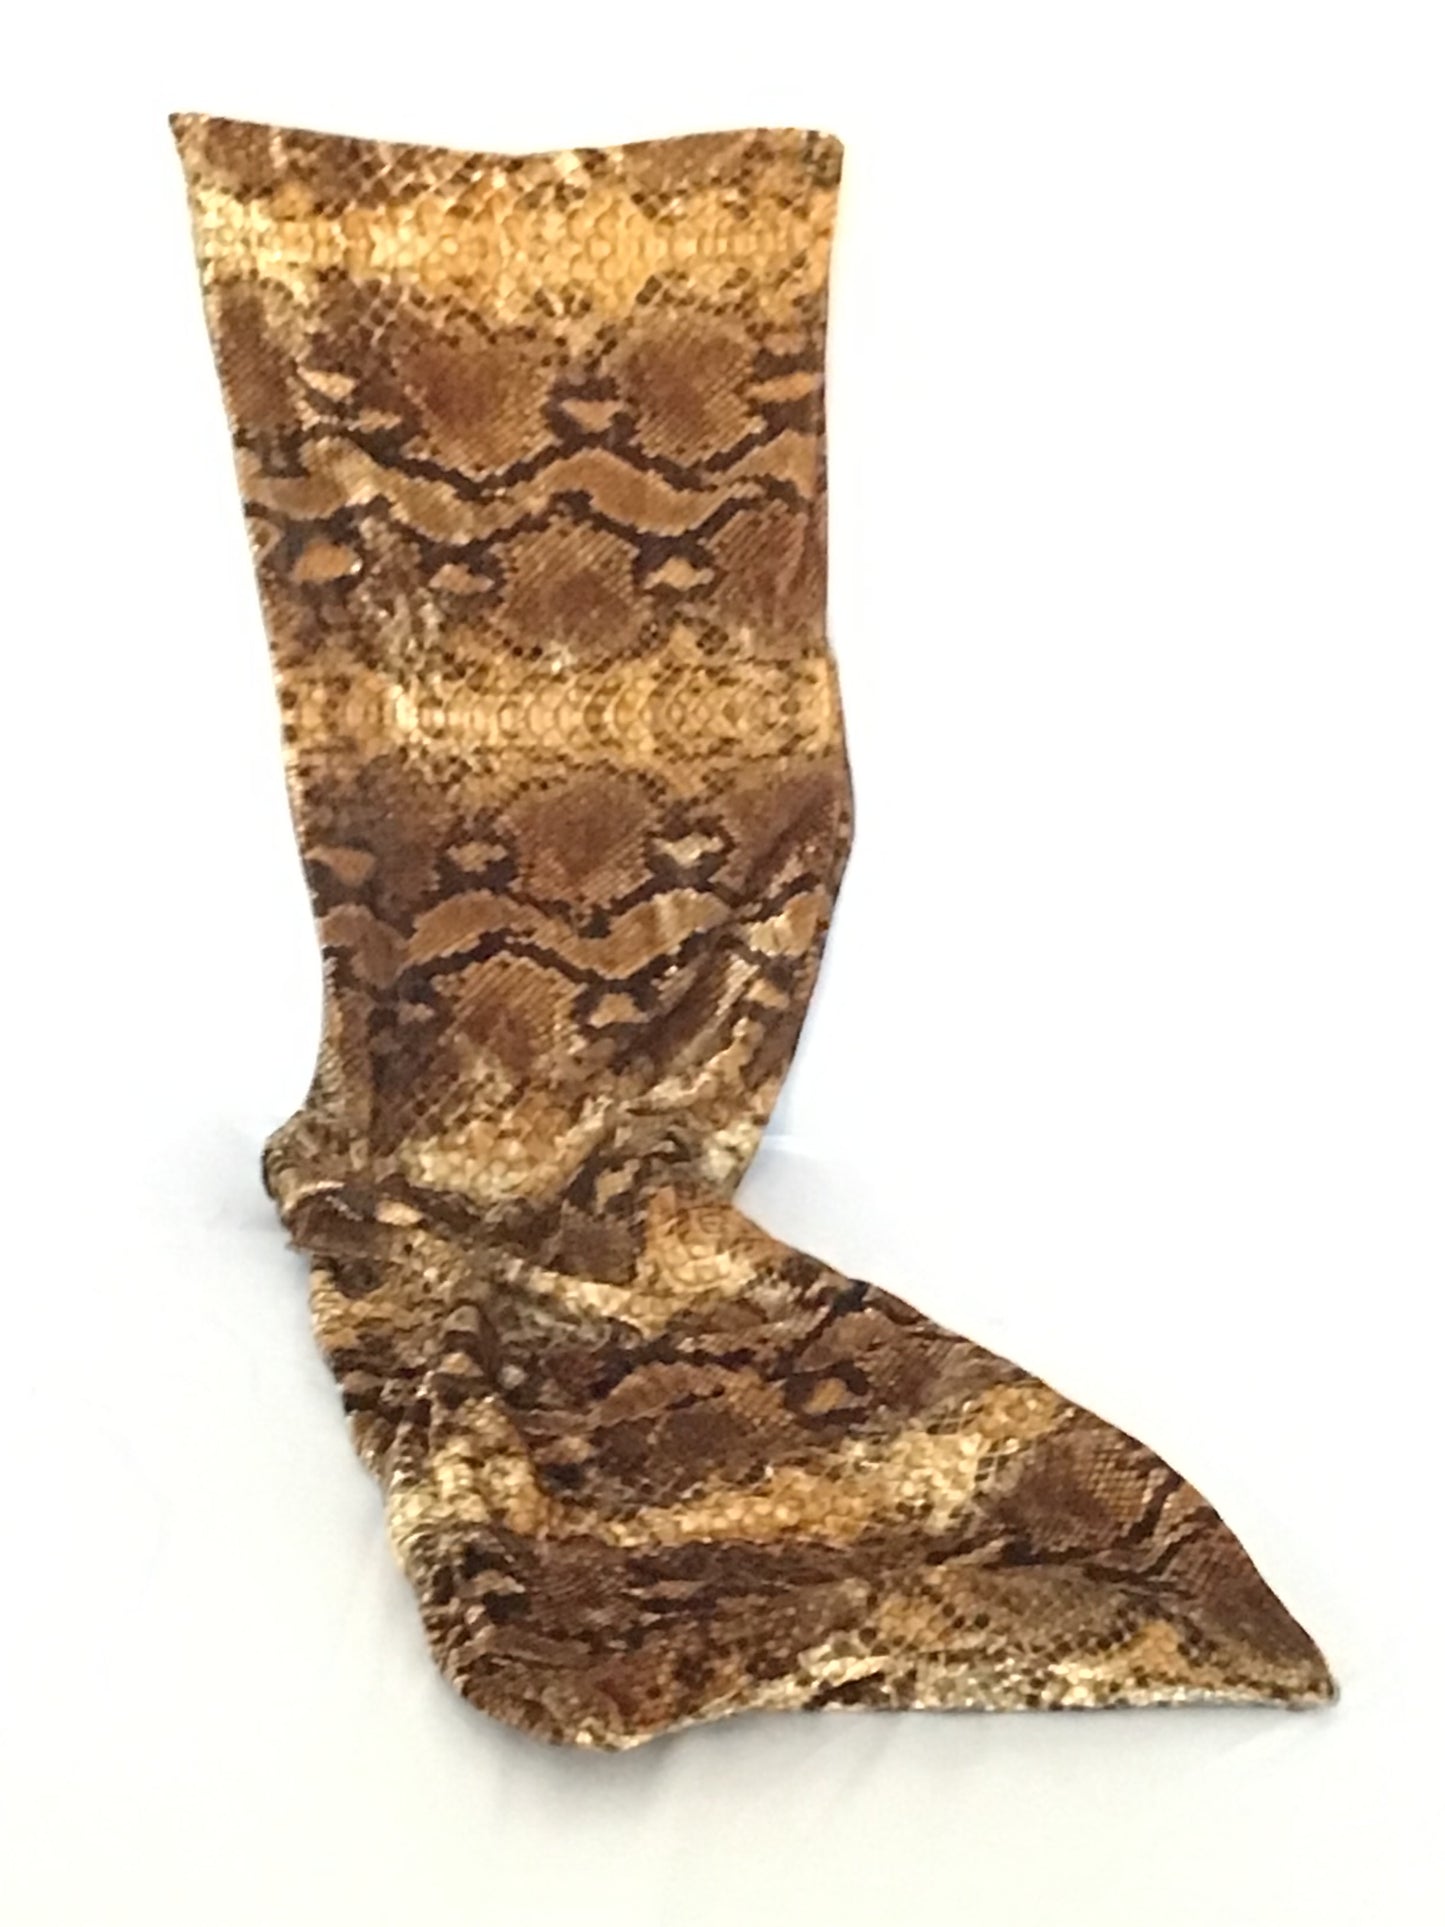 Velvet Twisturban® in brown/ black/ gold python pattern